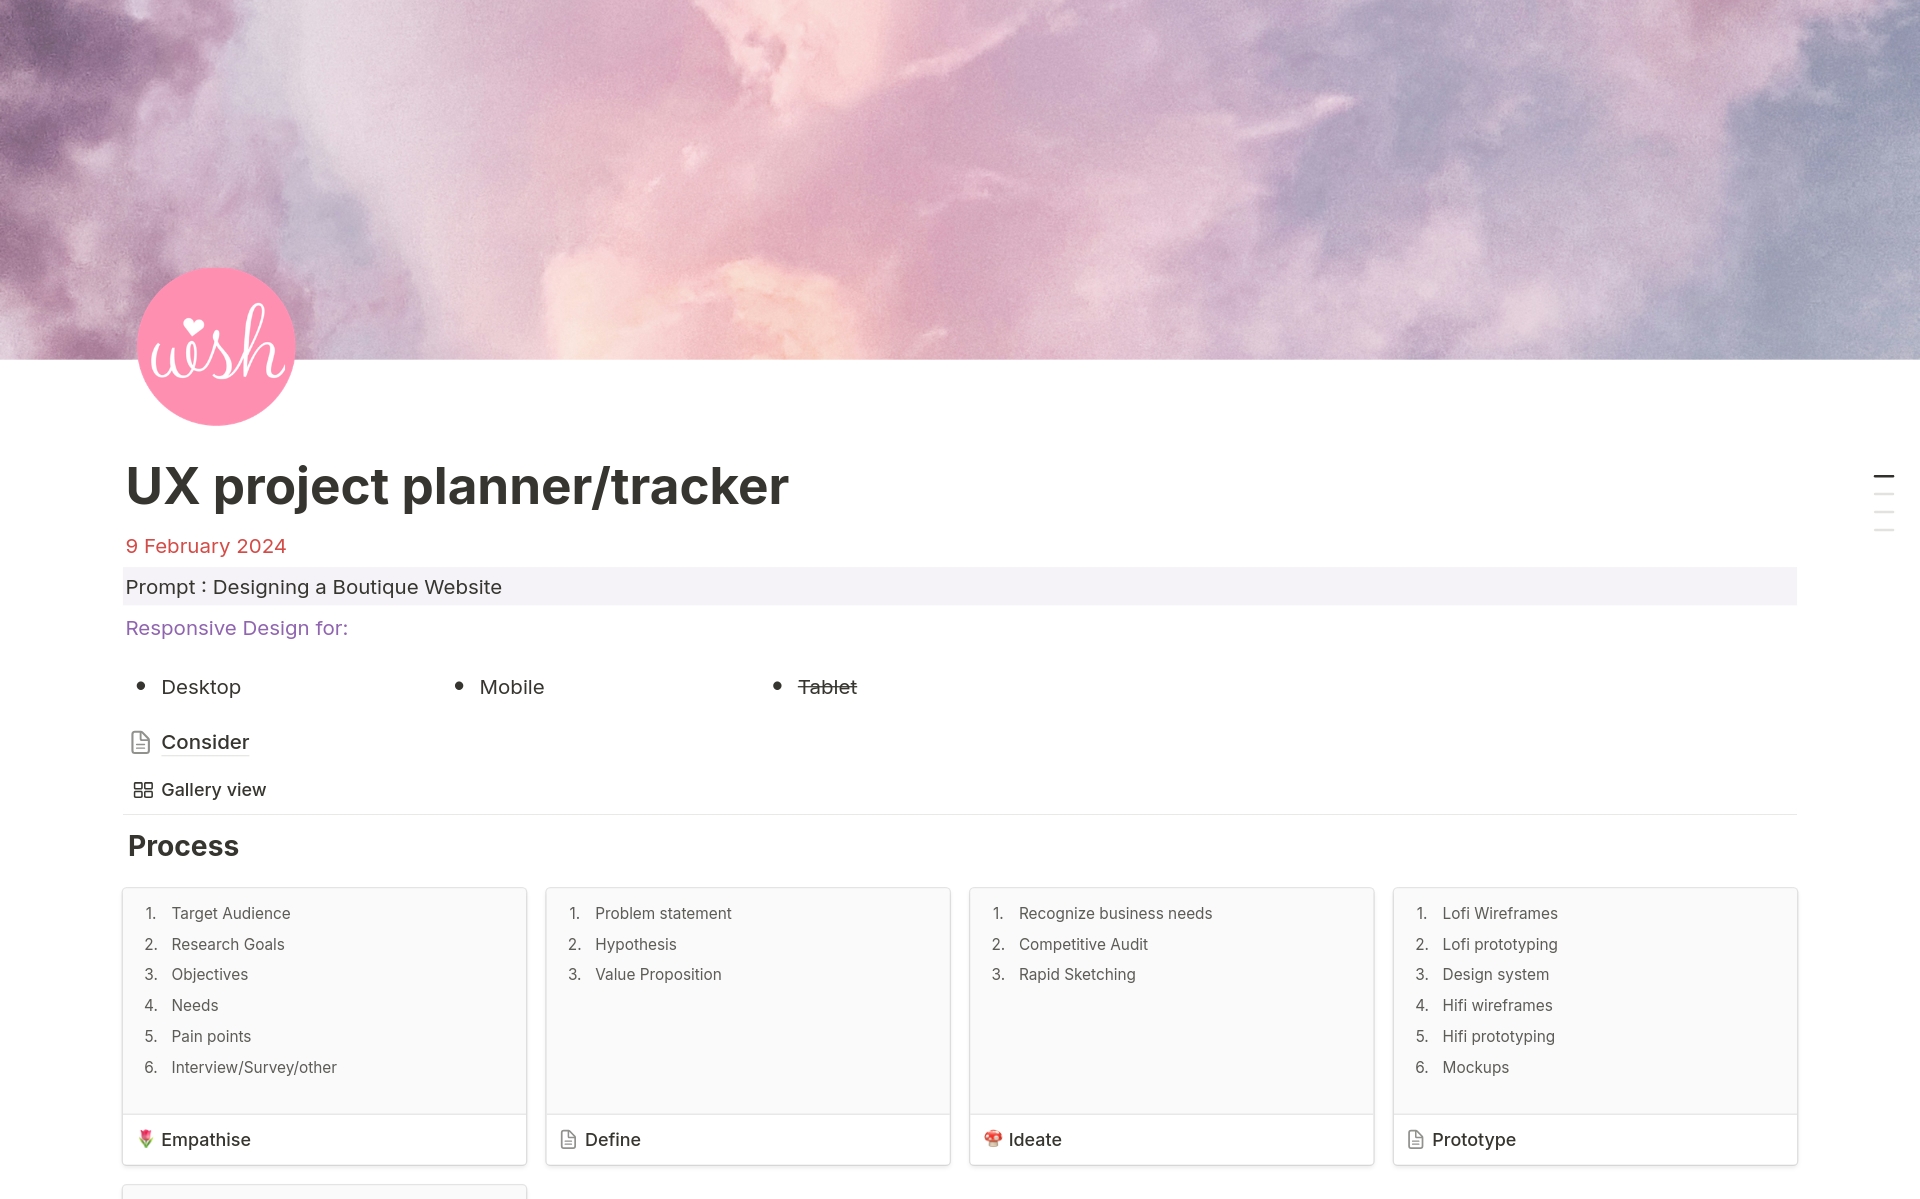 Uma prévia do modelo para UX Project Planner / Tracker